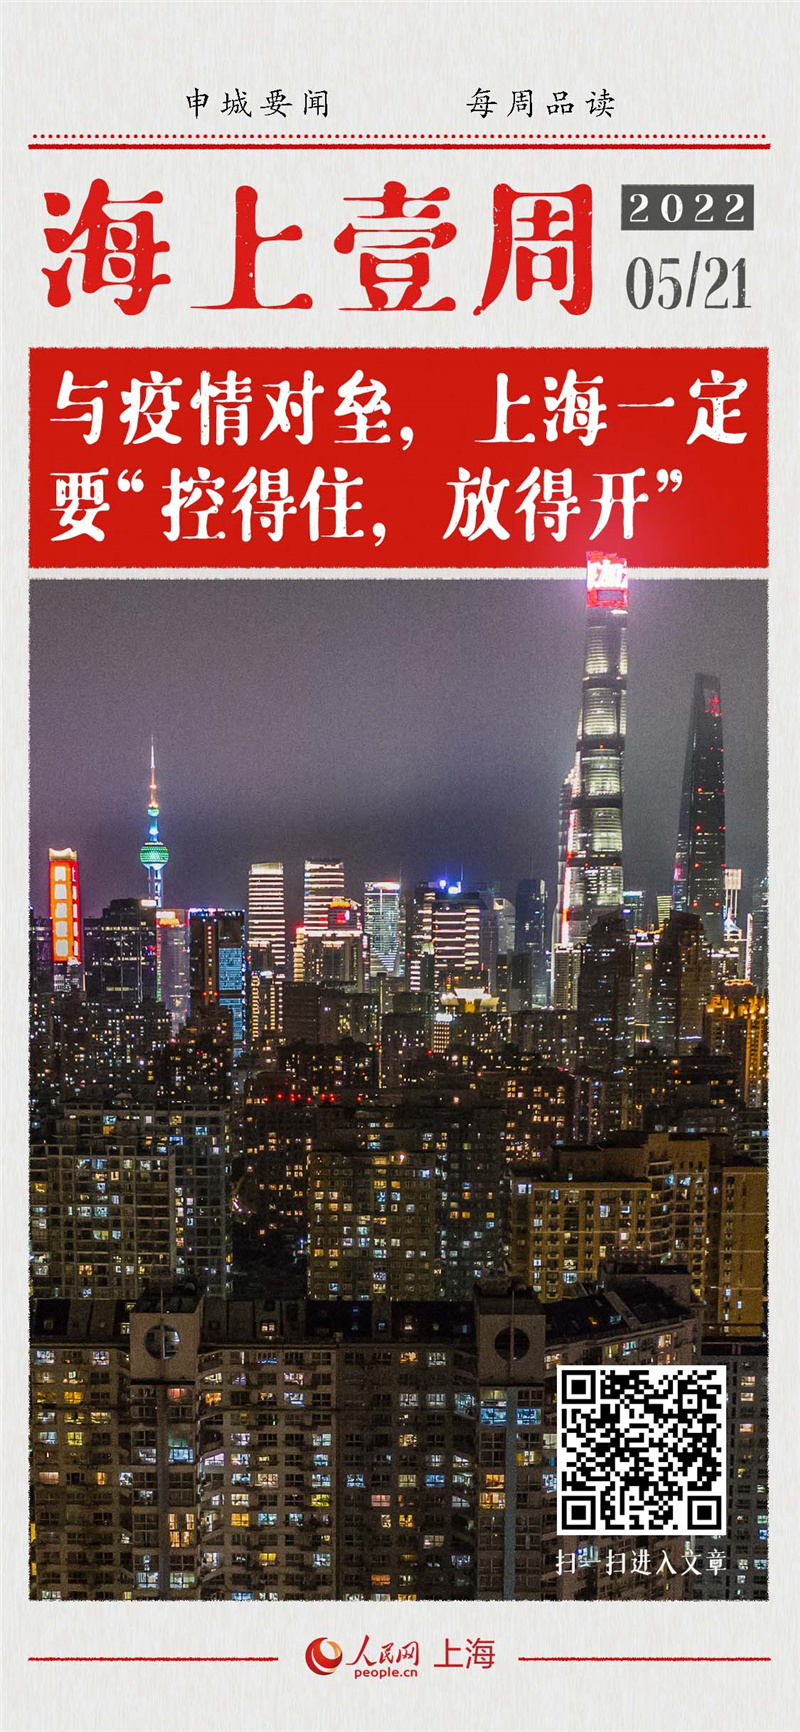 与疫情对垒，上海一定要“控得住，放得开”农谚云：“小满小满，江河渐满。”今日小满，过后气温升高、降雨增多，耕耘者相信丰收在望。上海此轮疫情防控已逾80日，今日一过，我们期盼着未来抗疫成果多来些好消息。5月20日，上海发布了1处中风险地区；5月21日，又有6地由中风险地区调整为低风险地区。这意味着上海目前的疫情防控，正逐渐由应急状态向常态化防控转换。[详细]